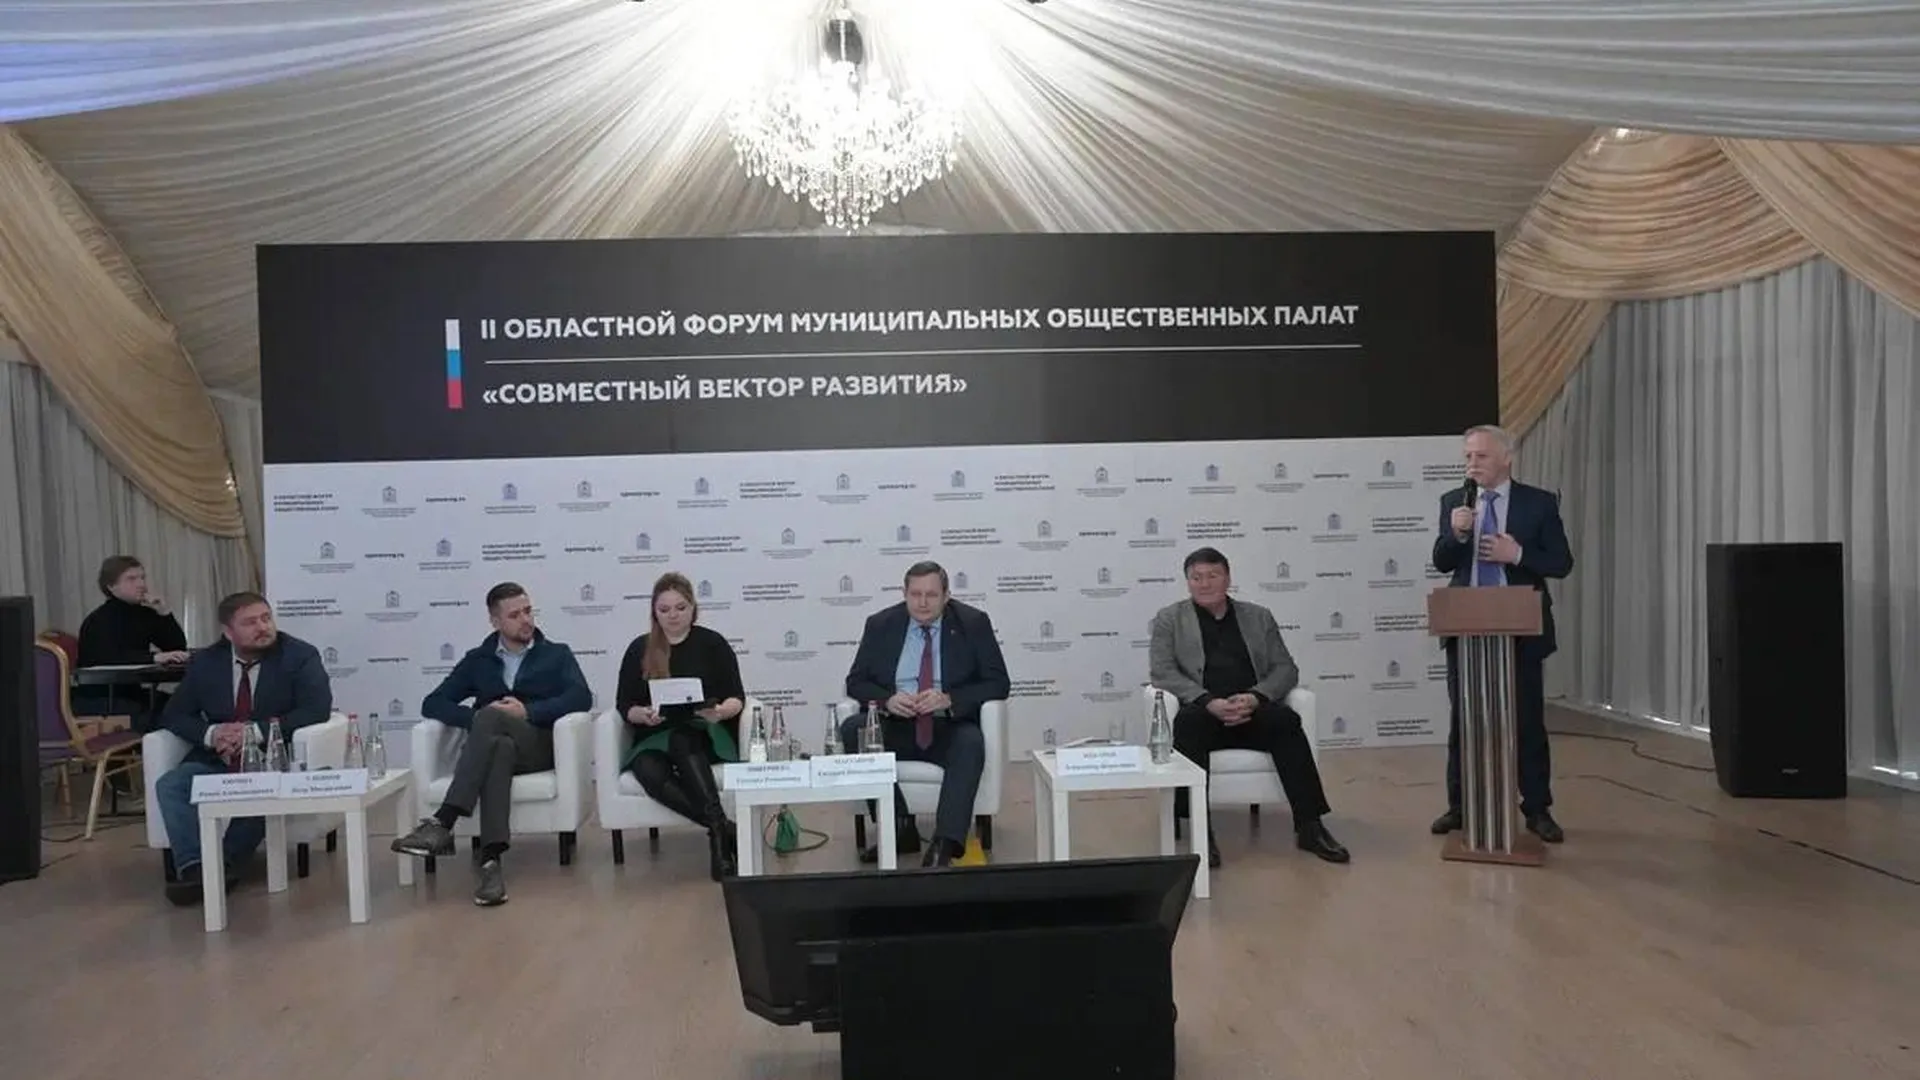 «Совместный вектор развития»: в Красногорске стартовал II форум муниципальных Общественных палат